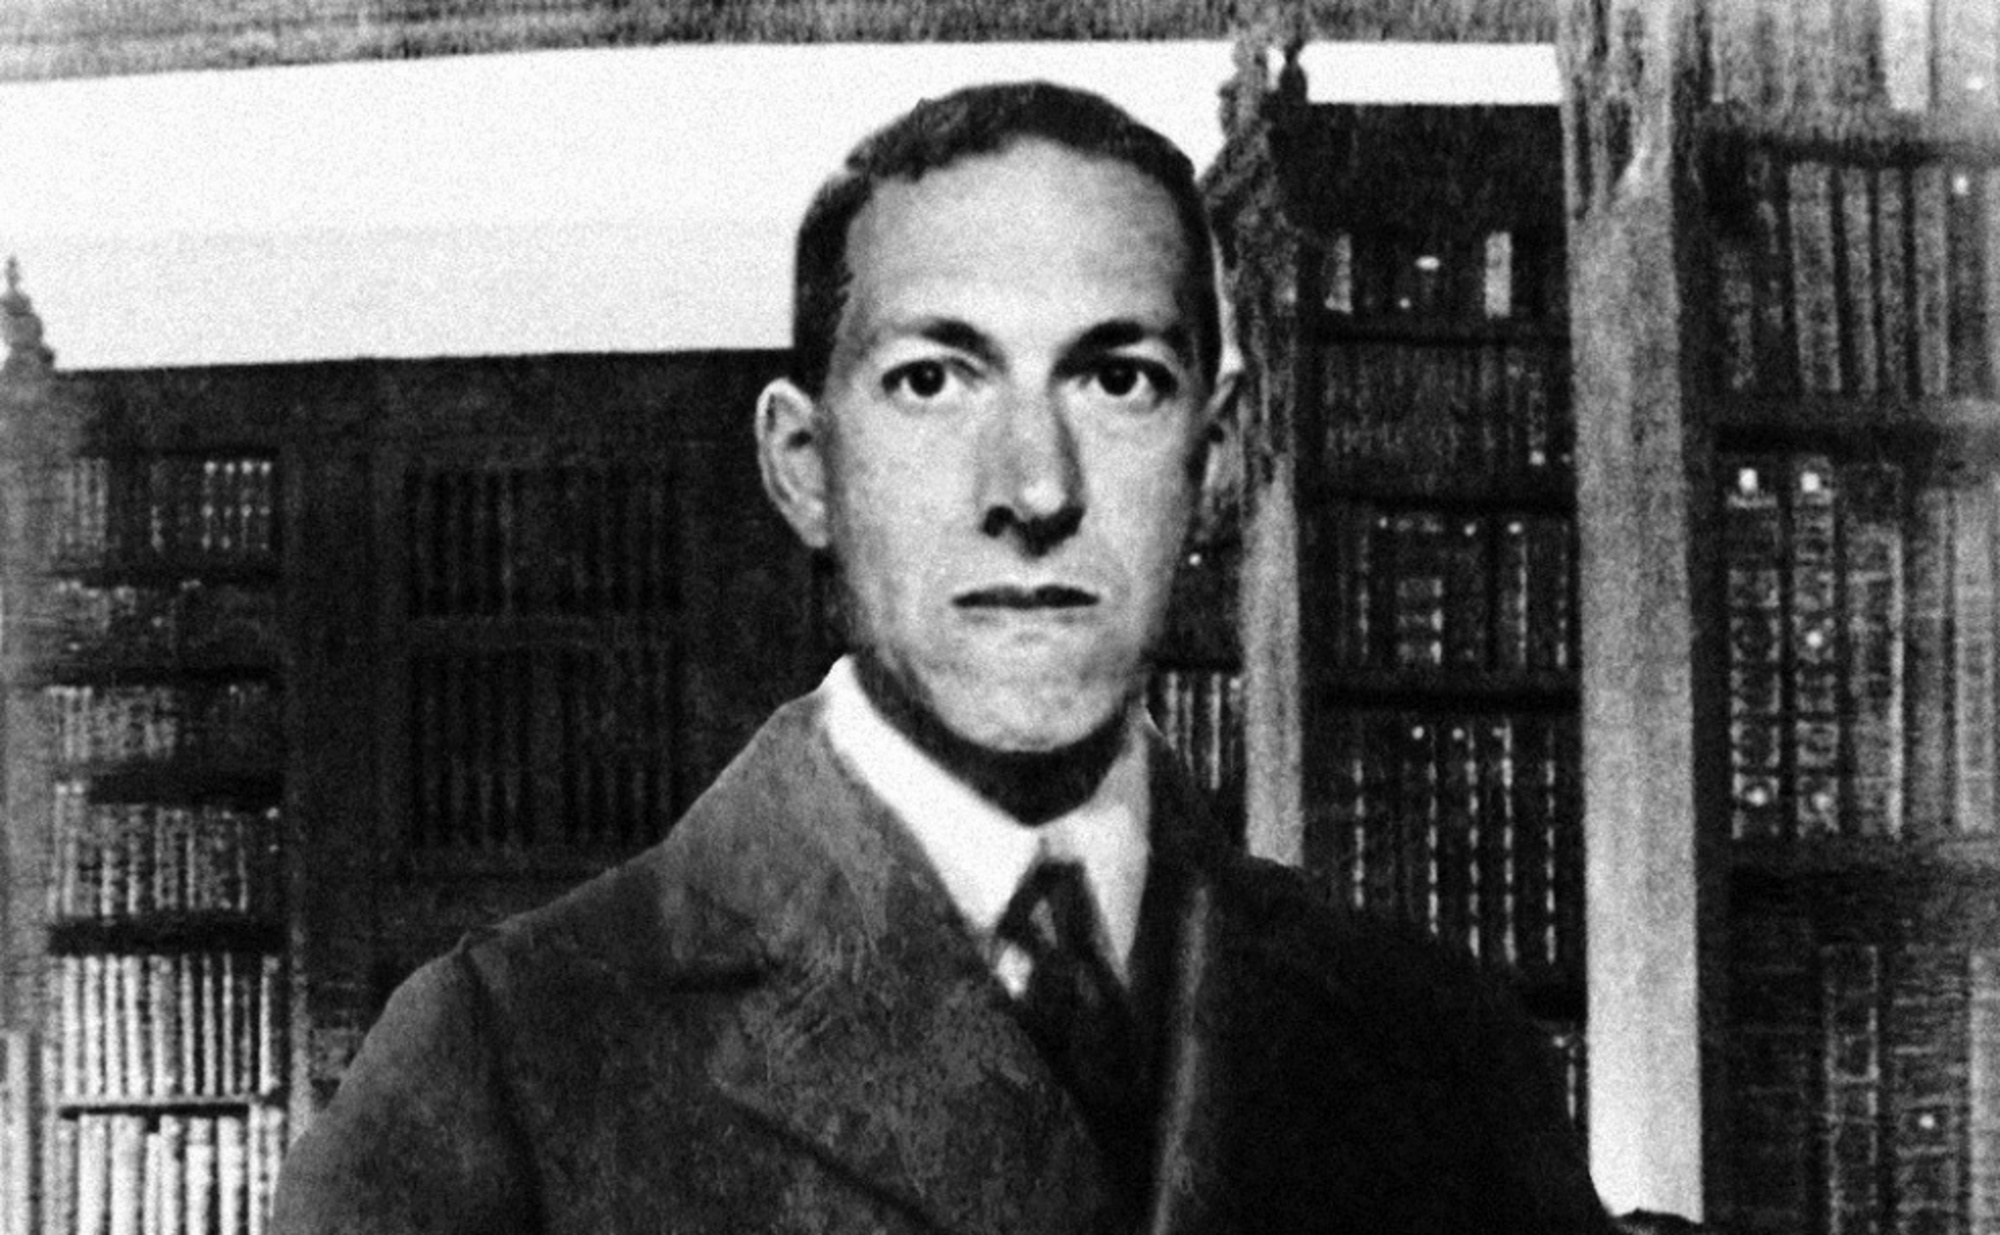 “Lovecraft aprì l’orrore alla dimensione cosmica”: Gianfranco de Turris dialoga con Matteo Fais sugli scritti teorici del genio di Providence